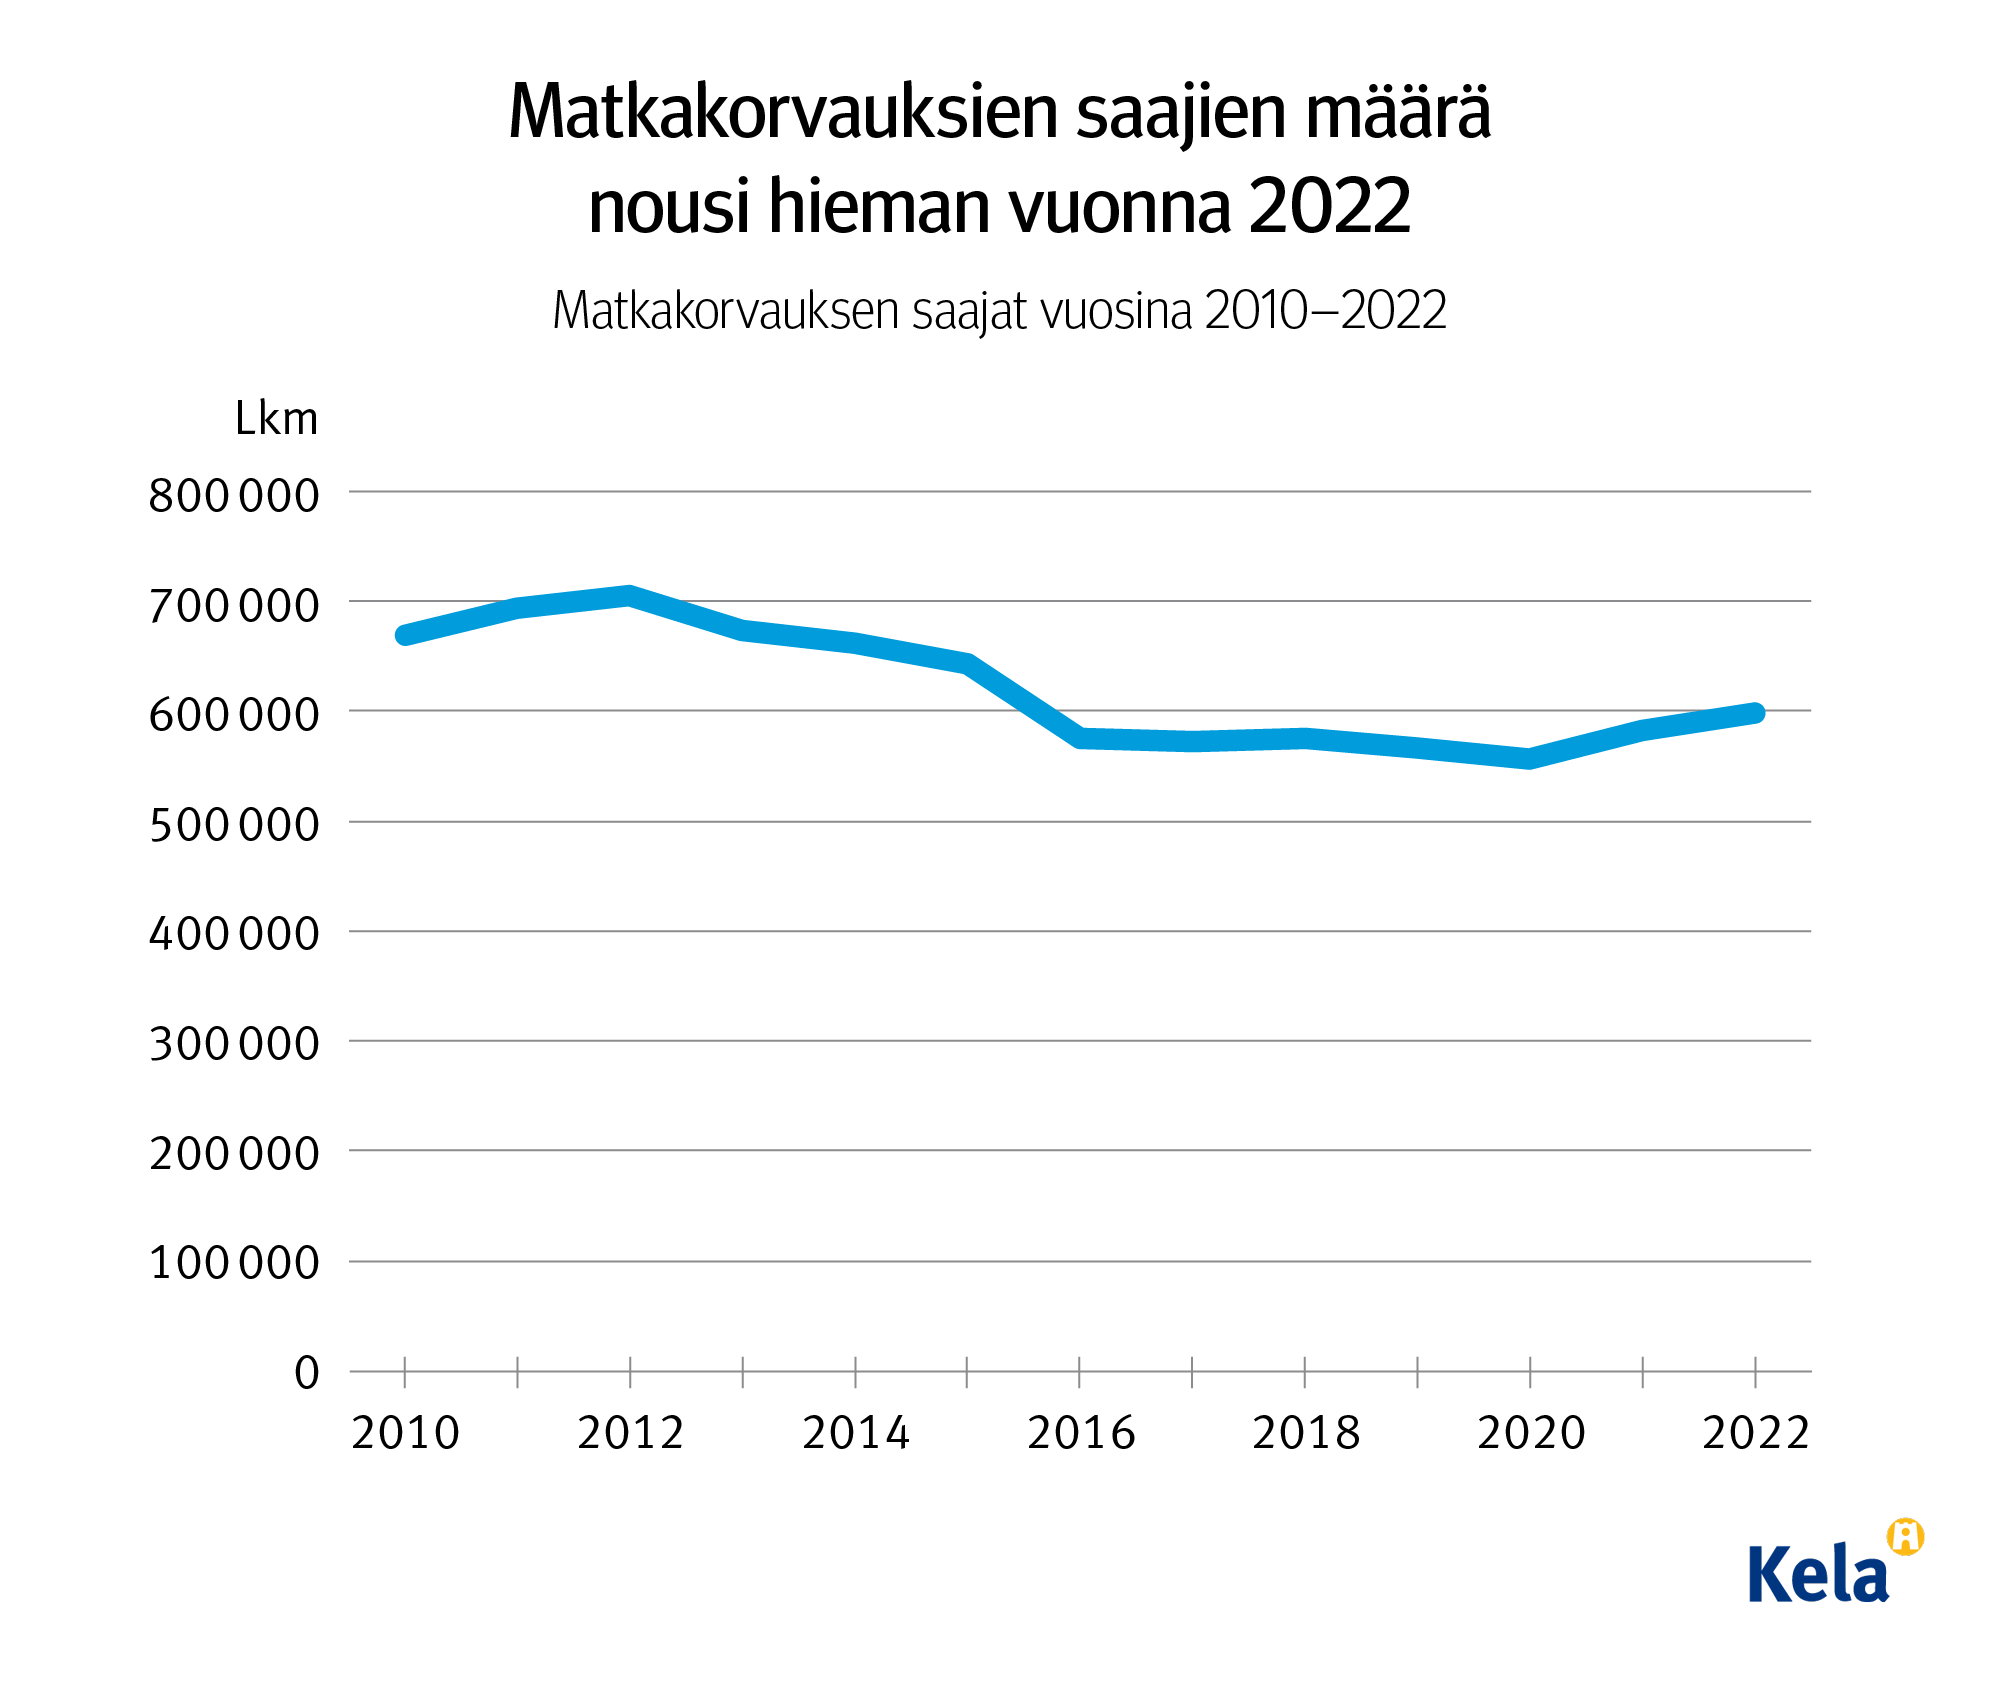 Kuvion otsikko: Matkakorvauksen saajien määrä nousi hieman vuonna 2022. Kuvio näyttää, että 2010-2022 matkakorvausten saajien määrät ovat laskeneet, mutta vuosina 2021-2022 niissä on hieman nousua. 